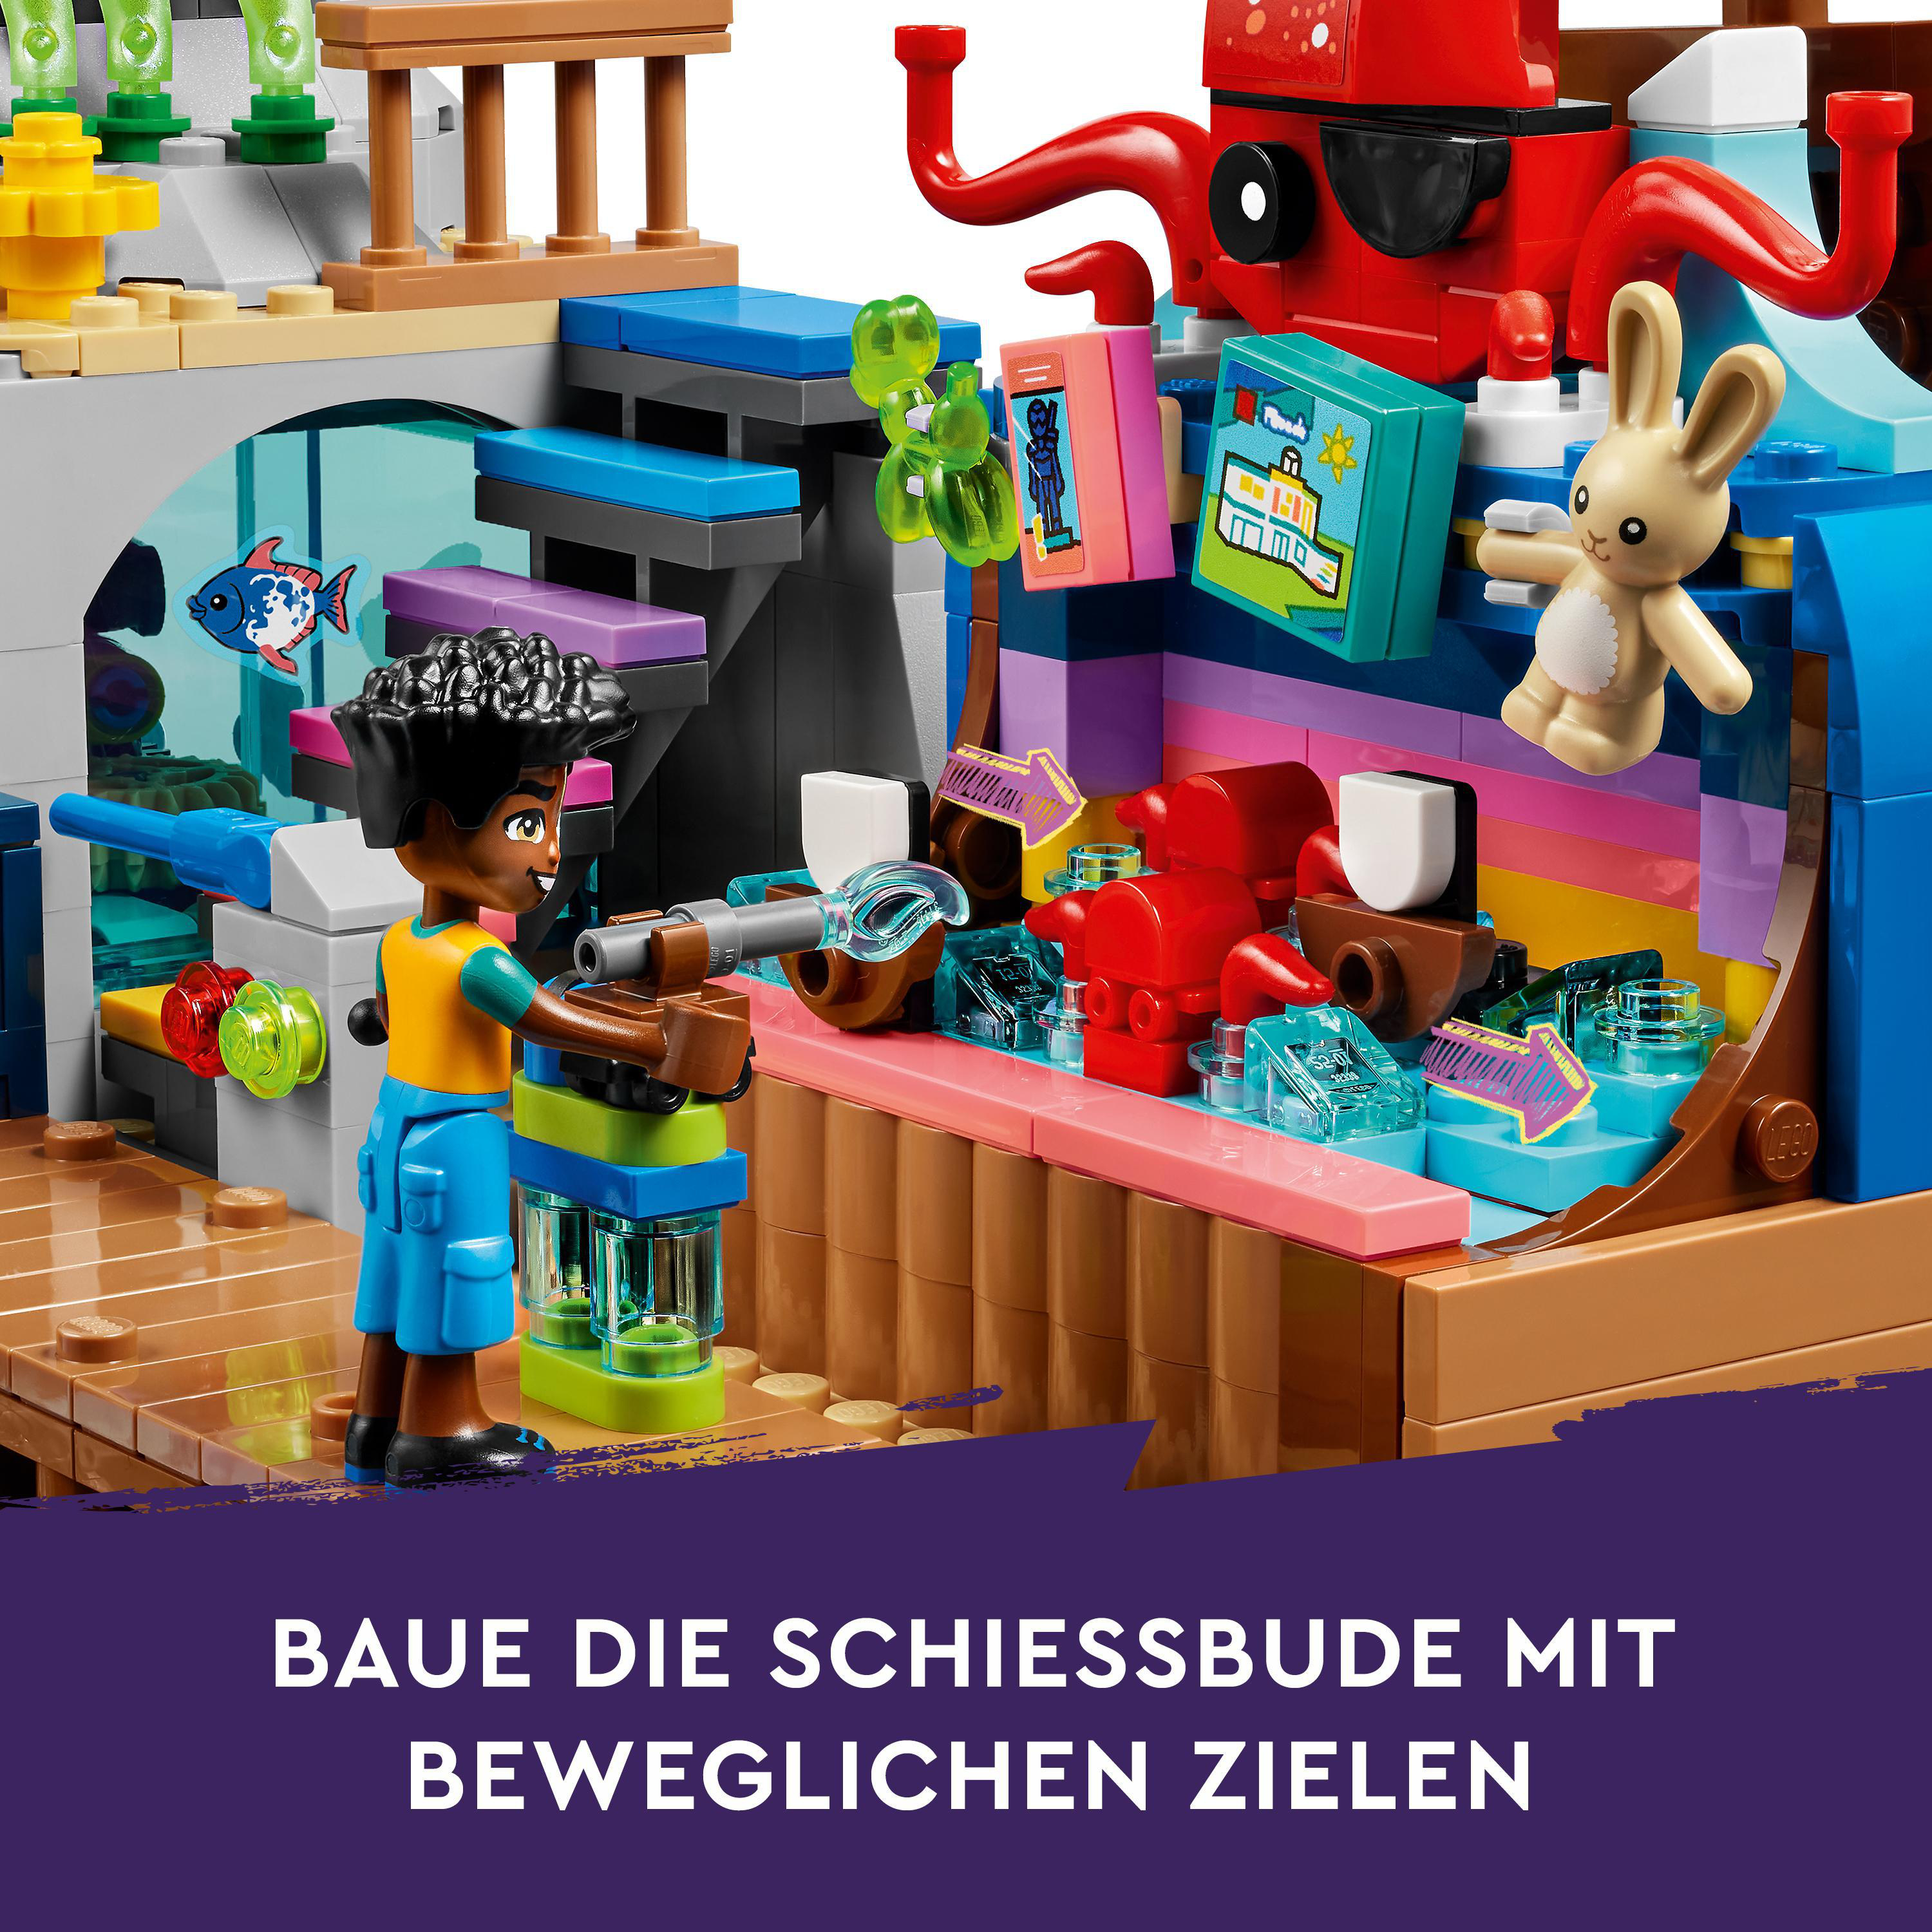 Friends Mehrfarbig Strand-Erlebnispark LEGO 41737 Bausatz,